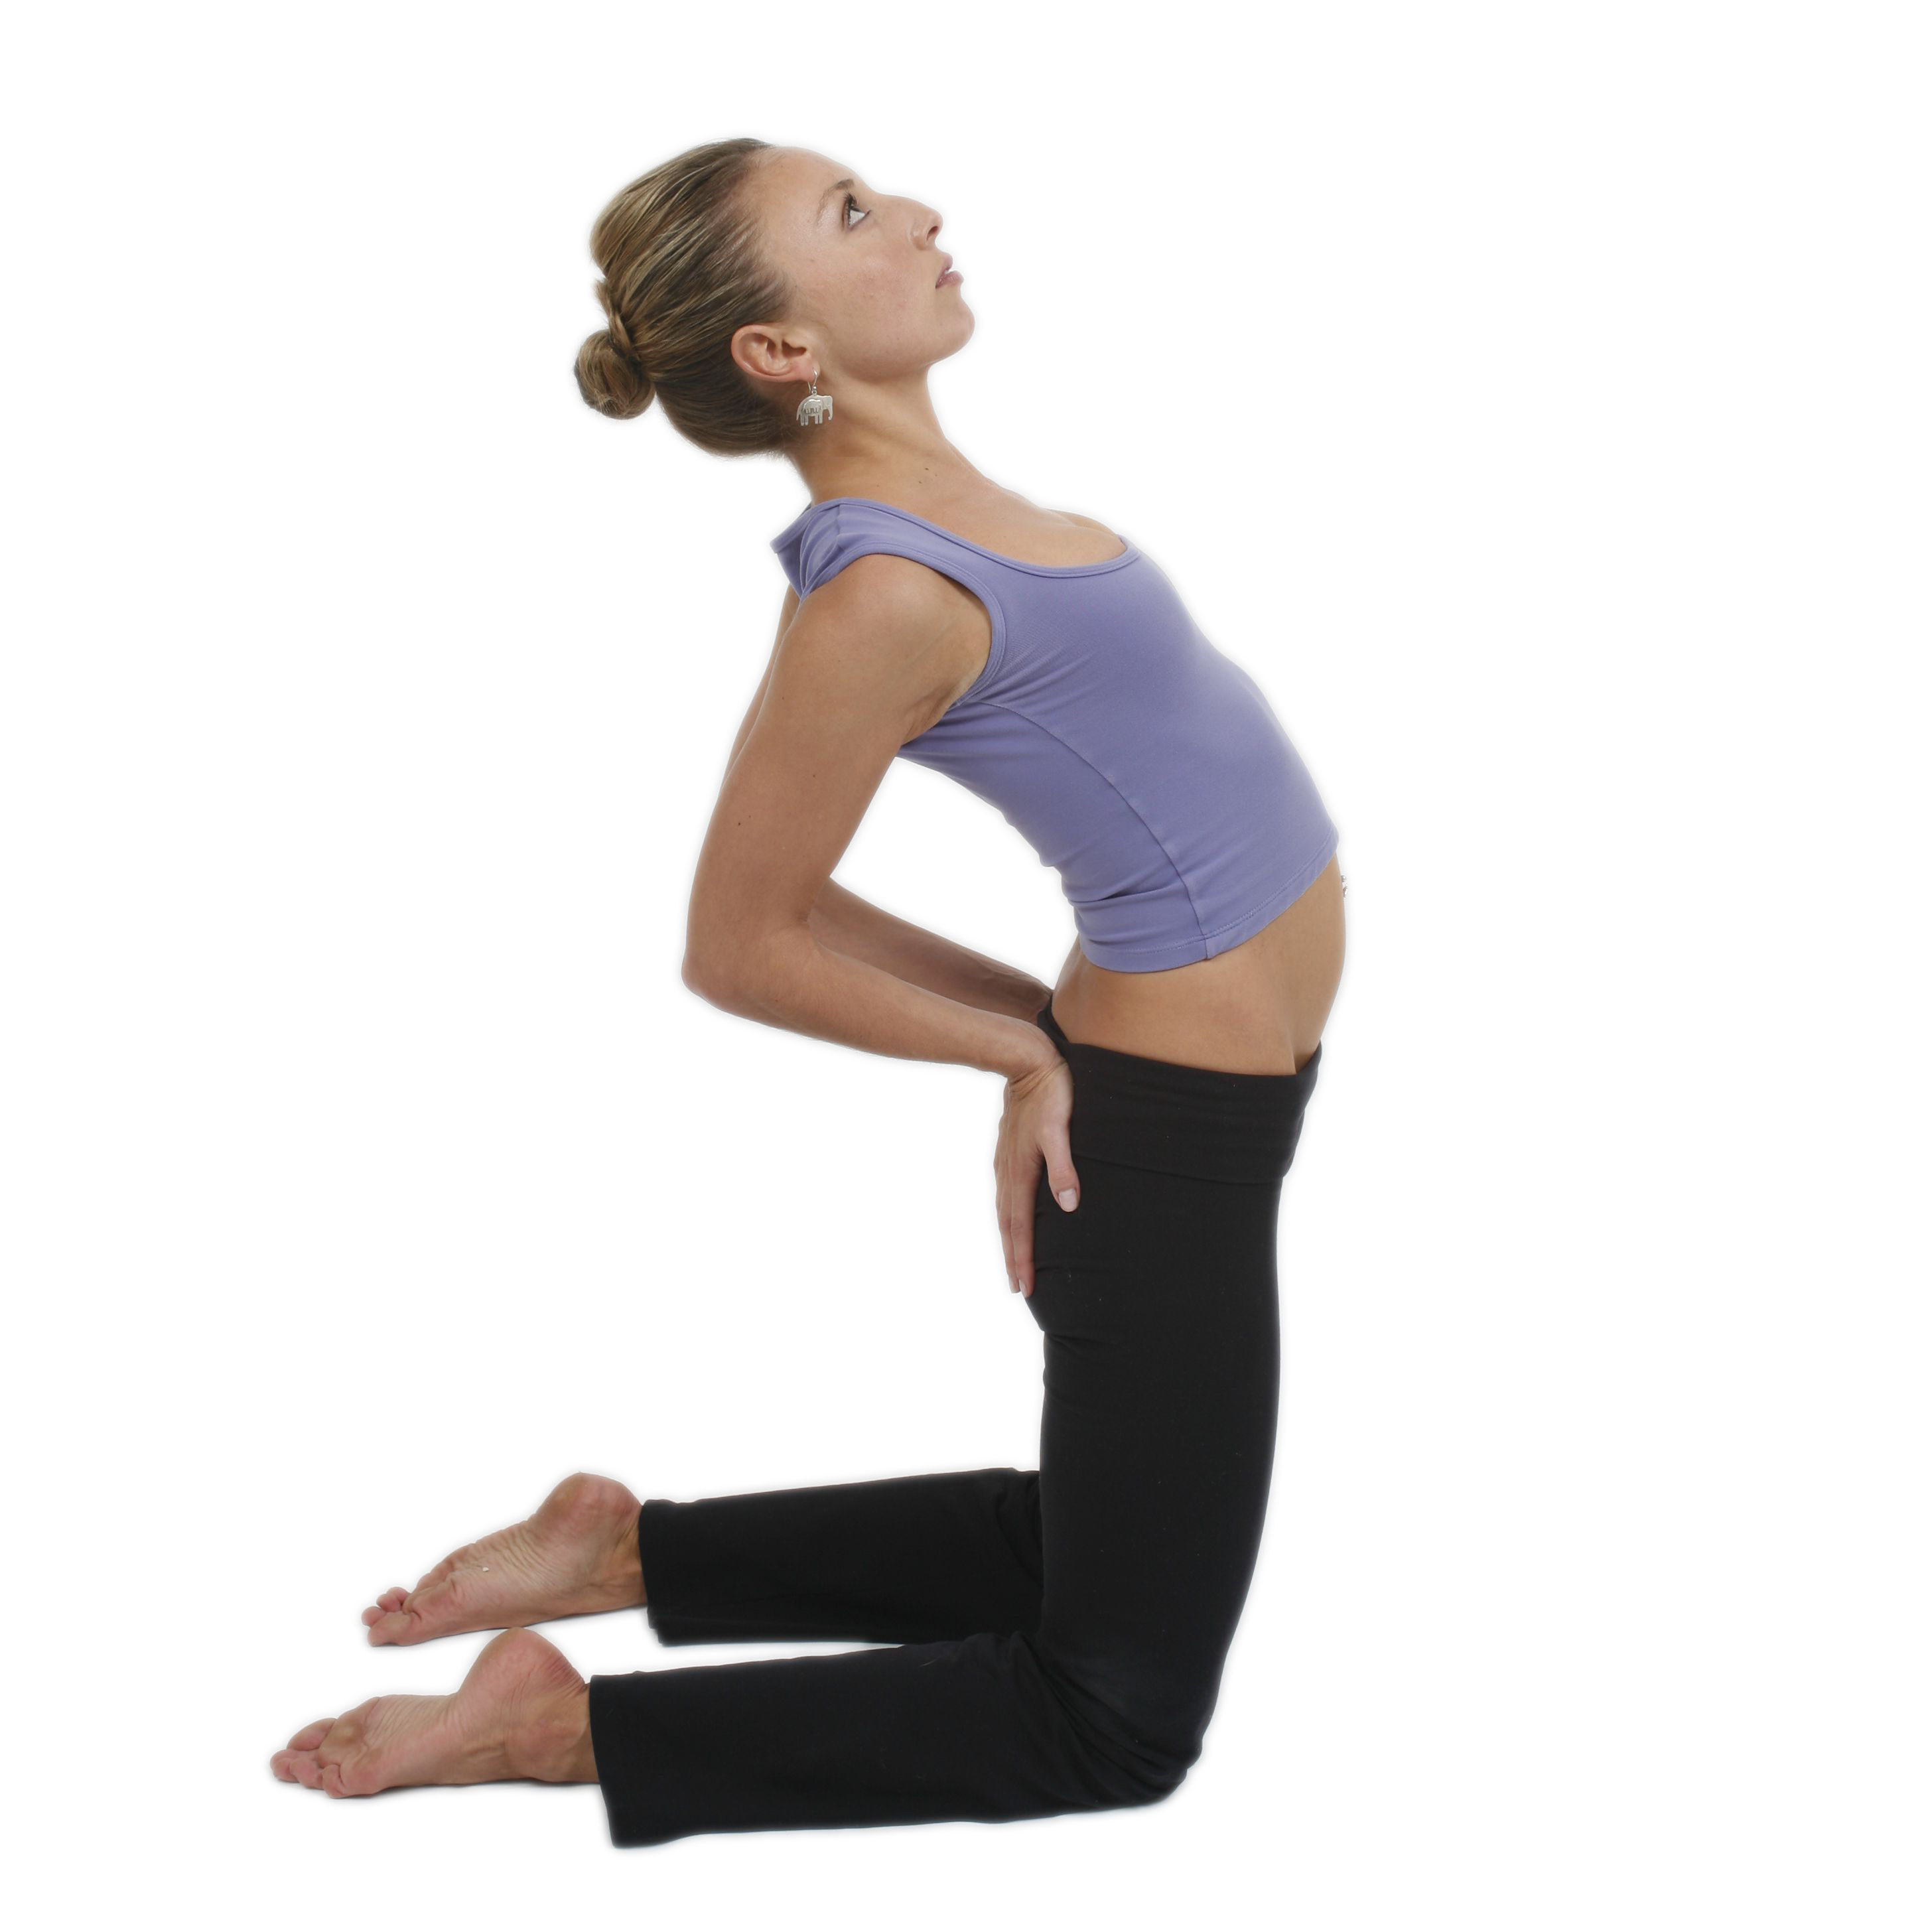 Yoga for mind, body and soul- Camel pose/ Ushtrasana | Happy yoga, What is  yoga, Camel pose